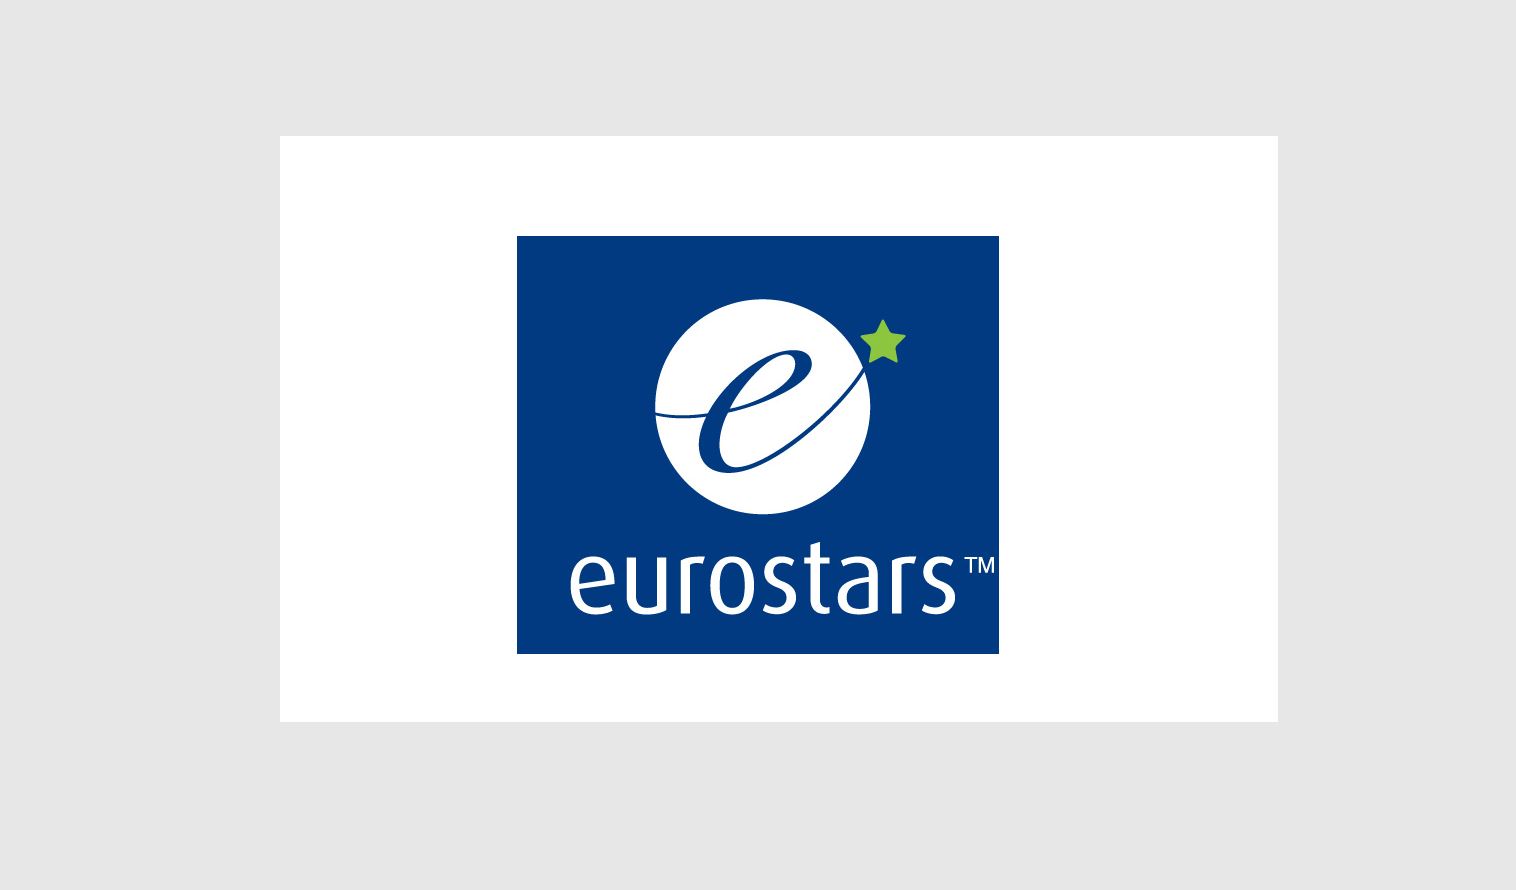 Logo eurostars